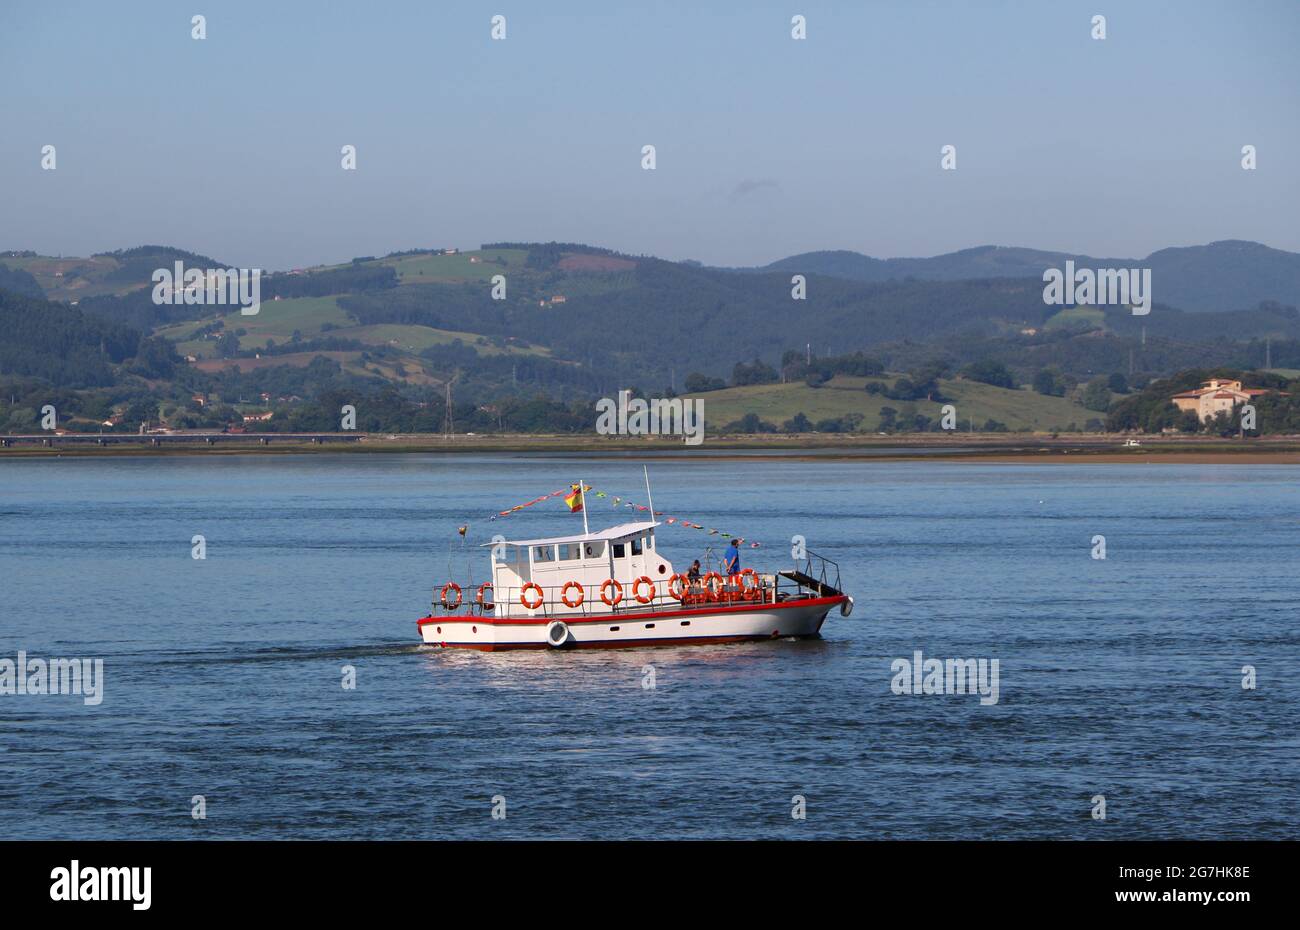 The Santona - Laredo ferry at sea Santona Cantabria Spain on a sunny June morning with few passengers Stock Photo